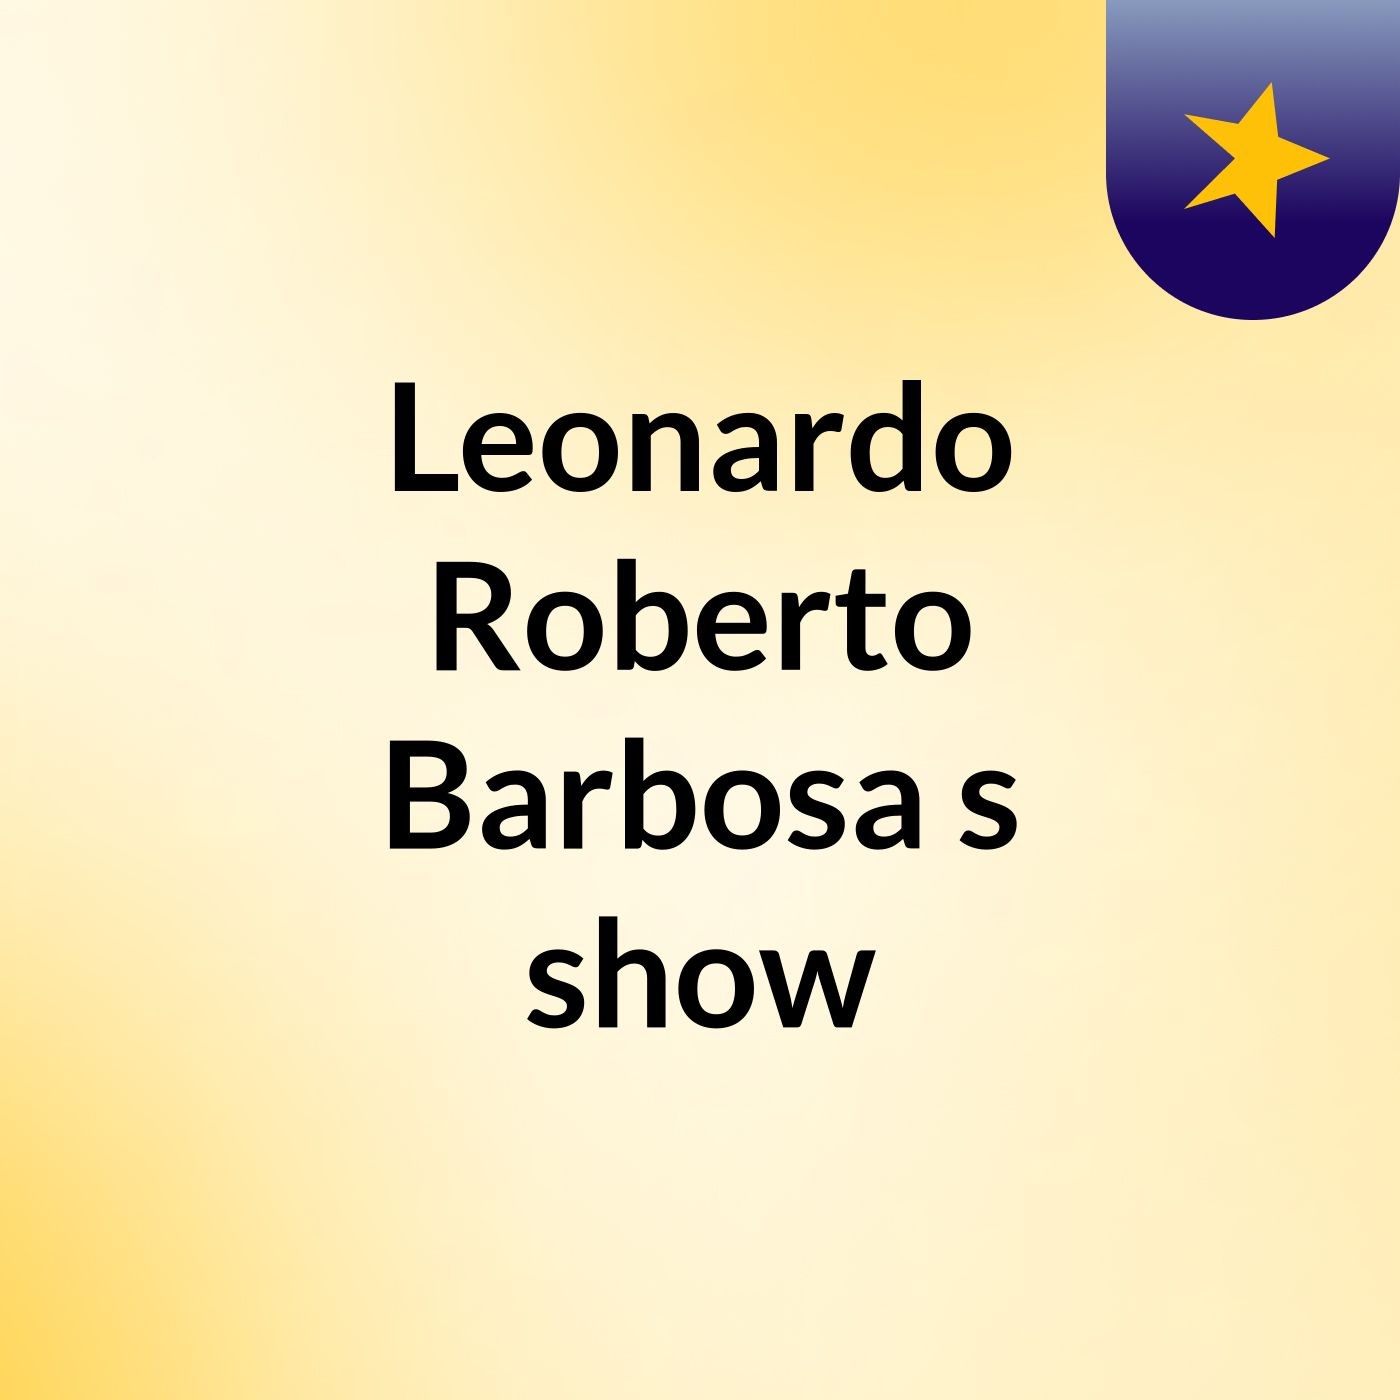 Leonardo Roberto Barbosa's show